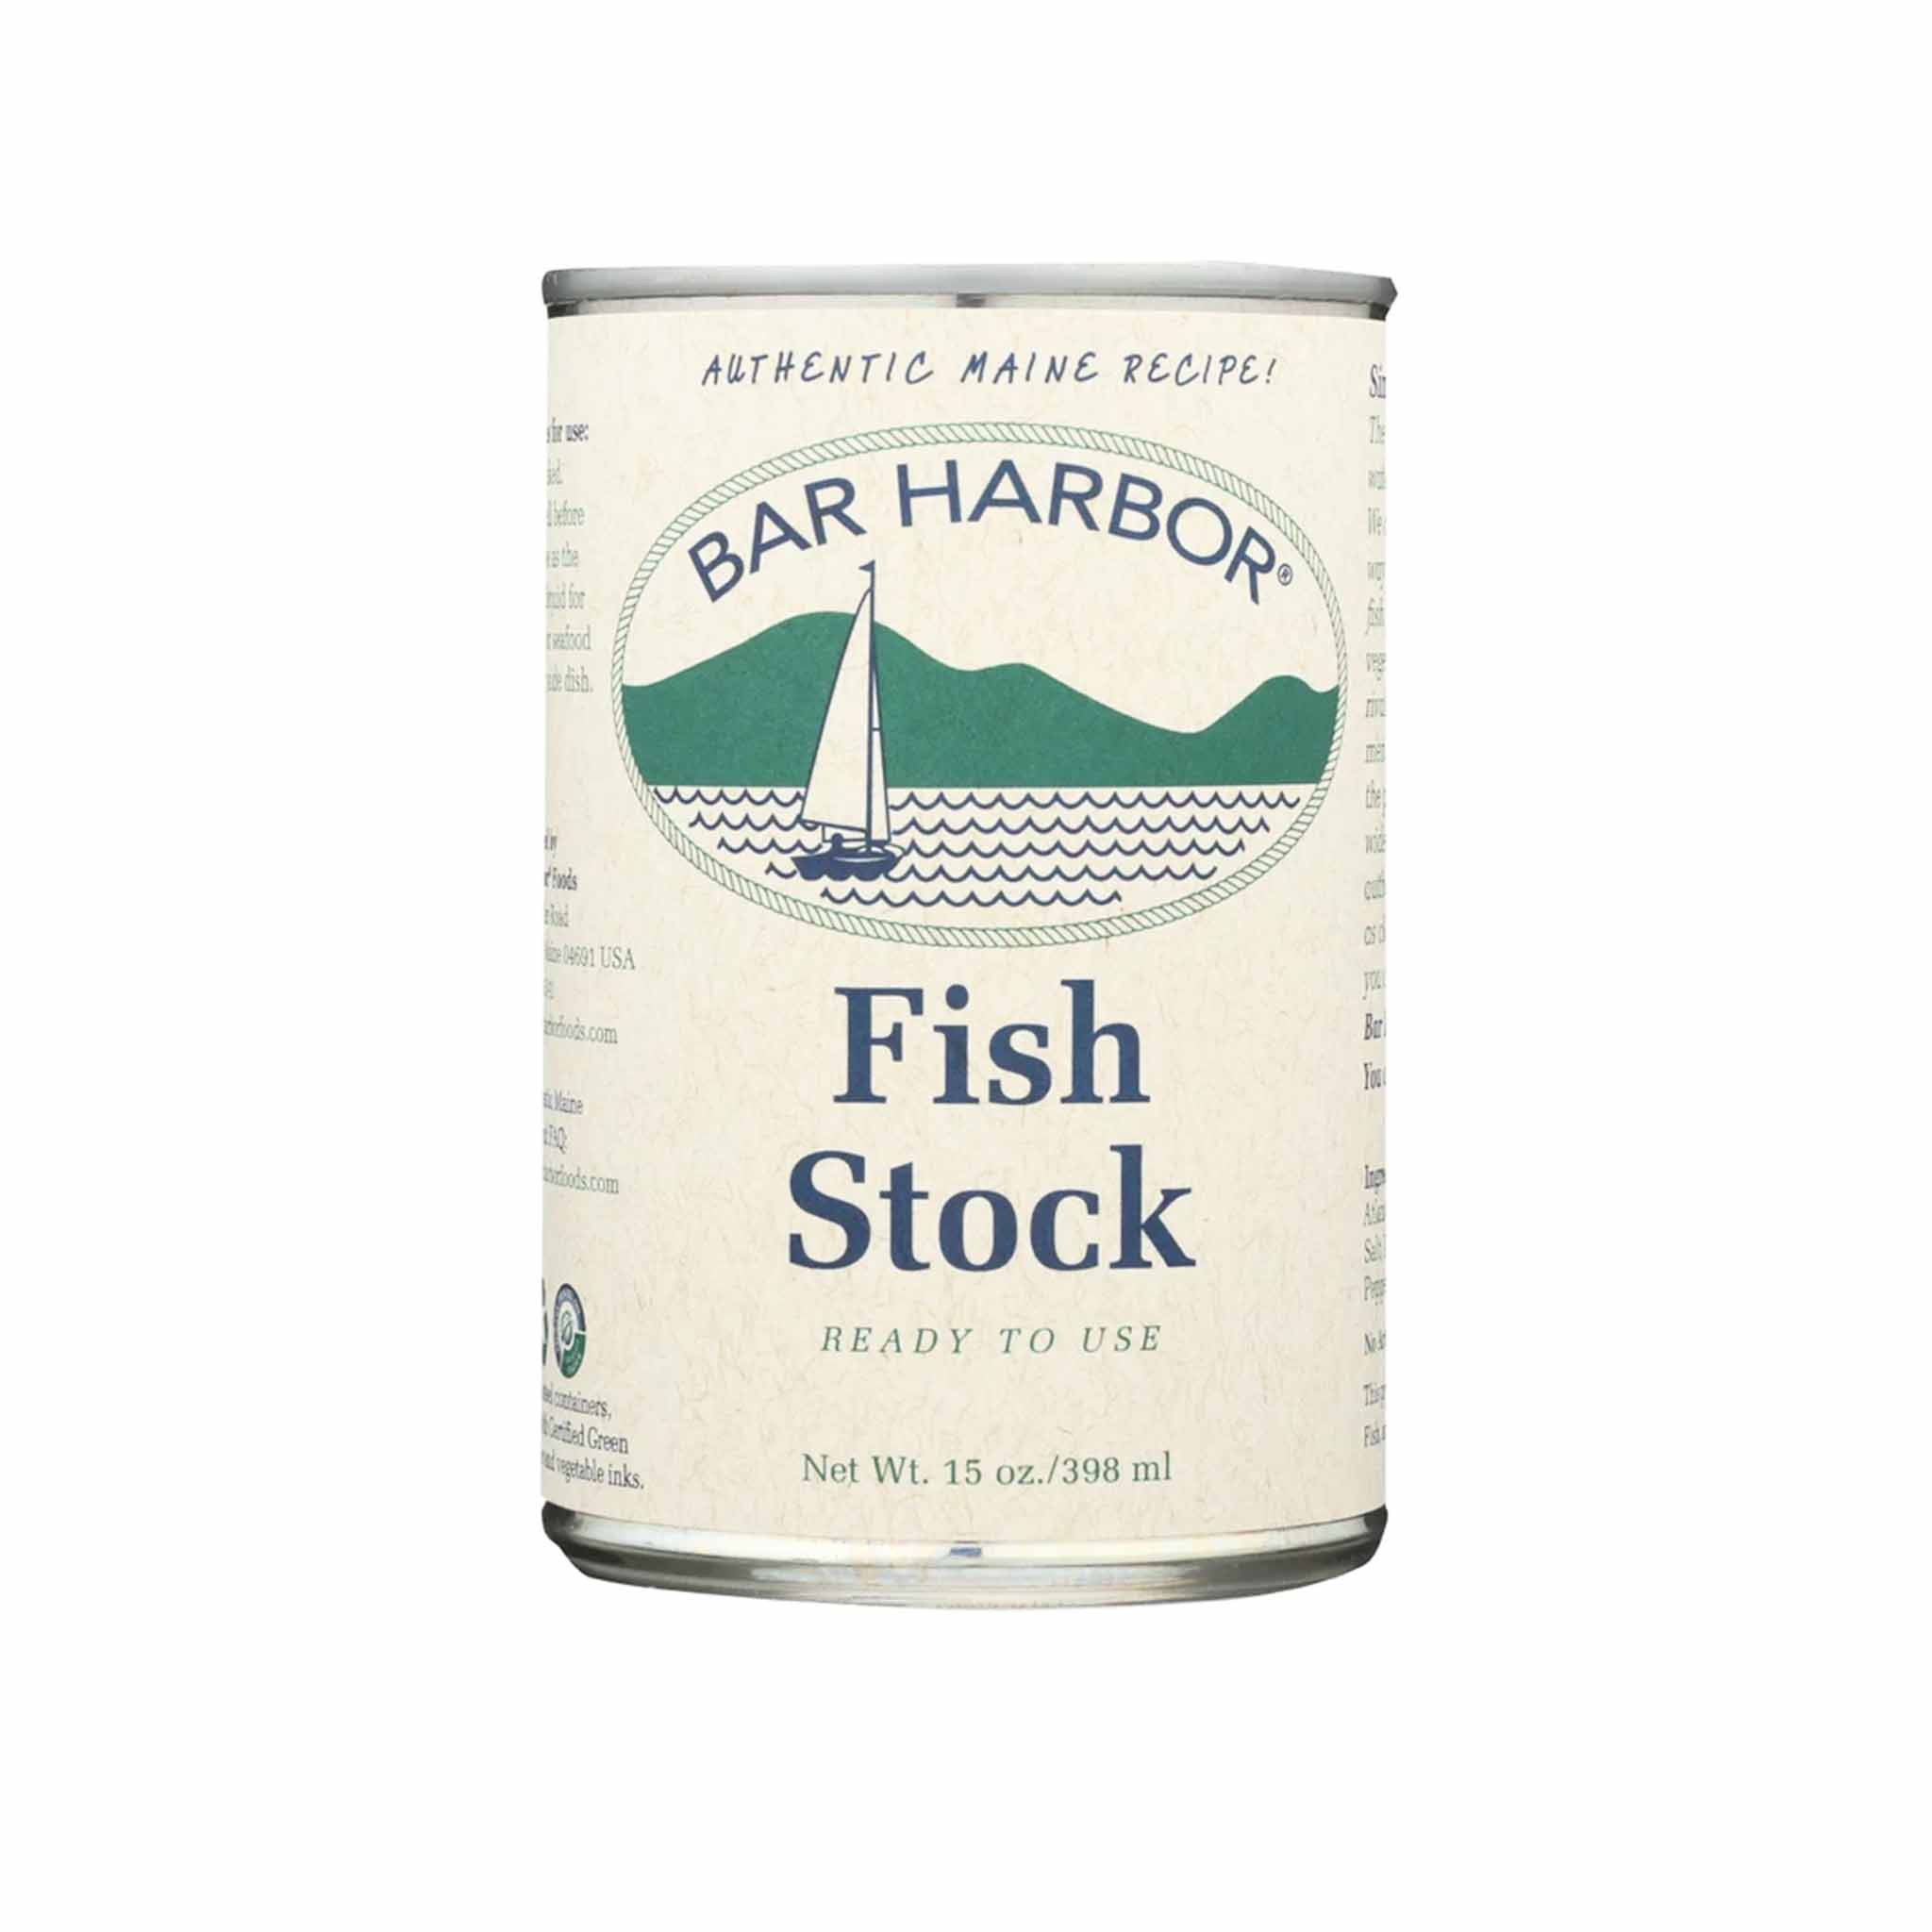 BAR HARBOR FISH STOCK 15oz